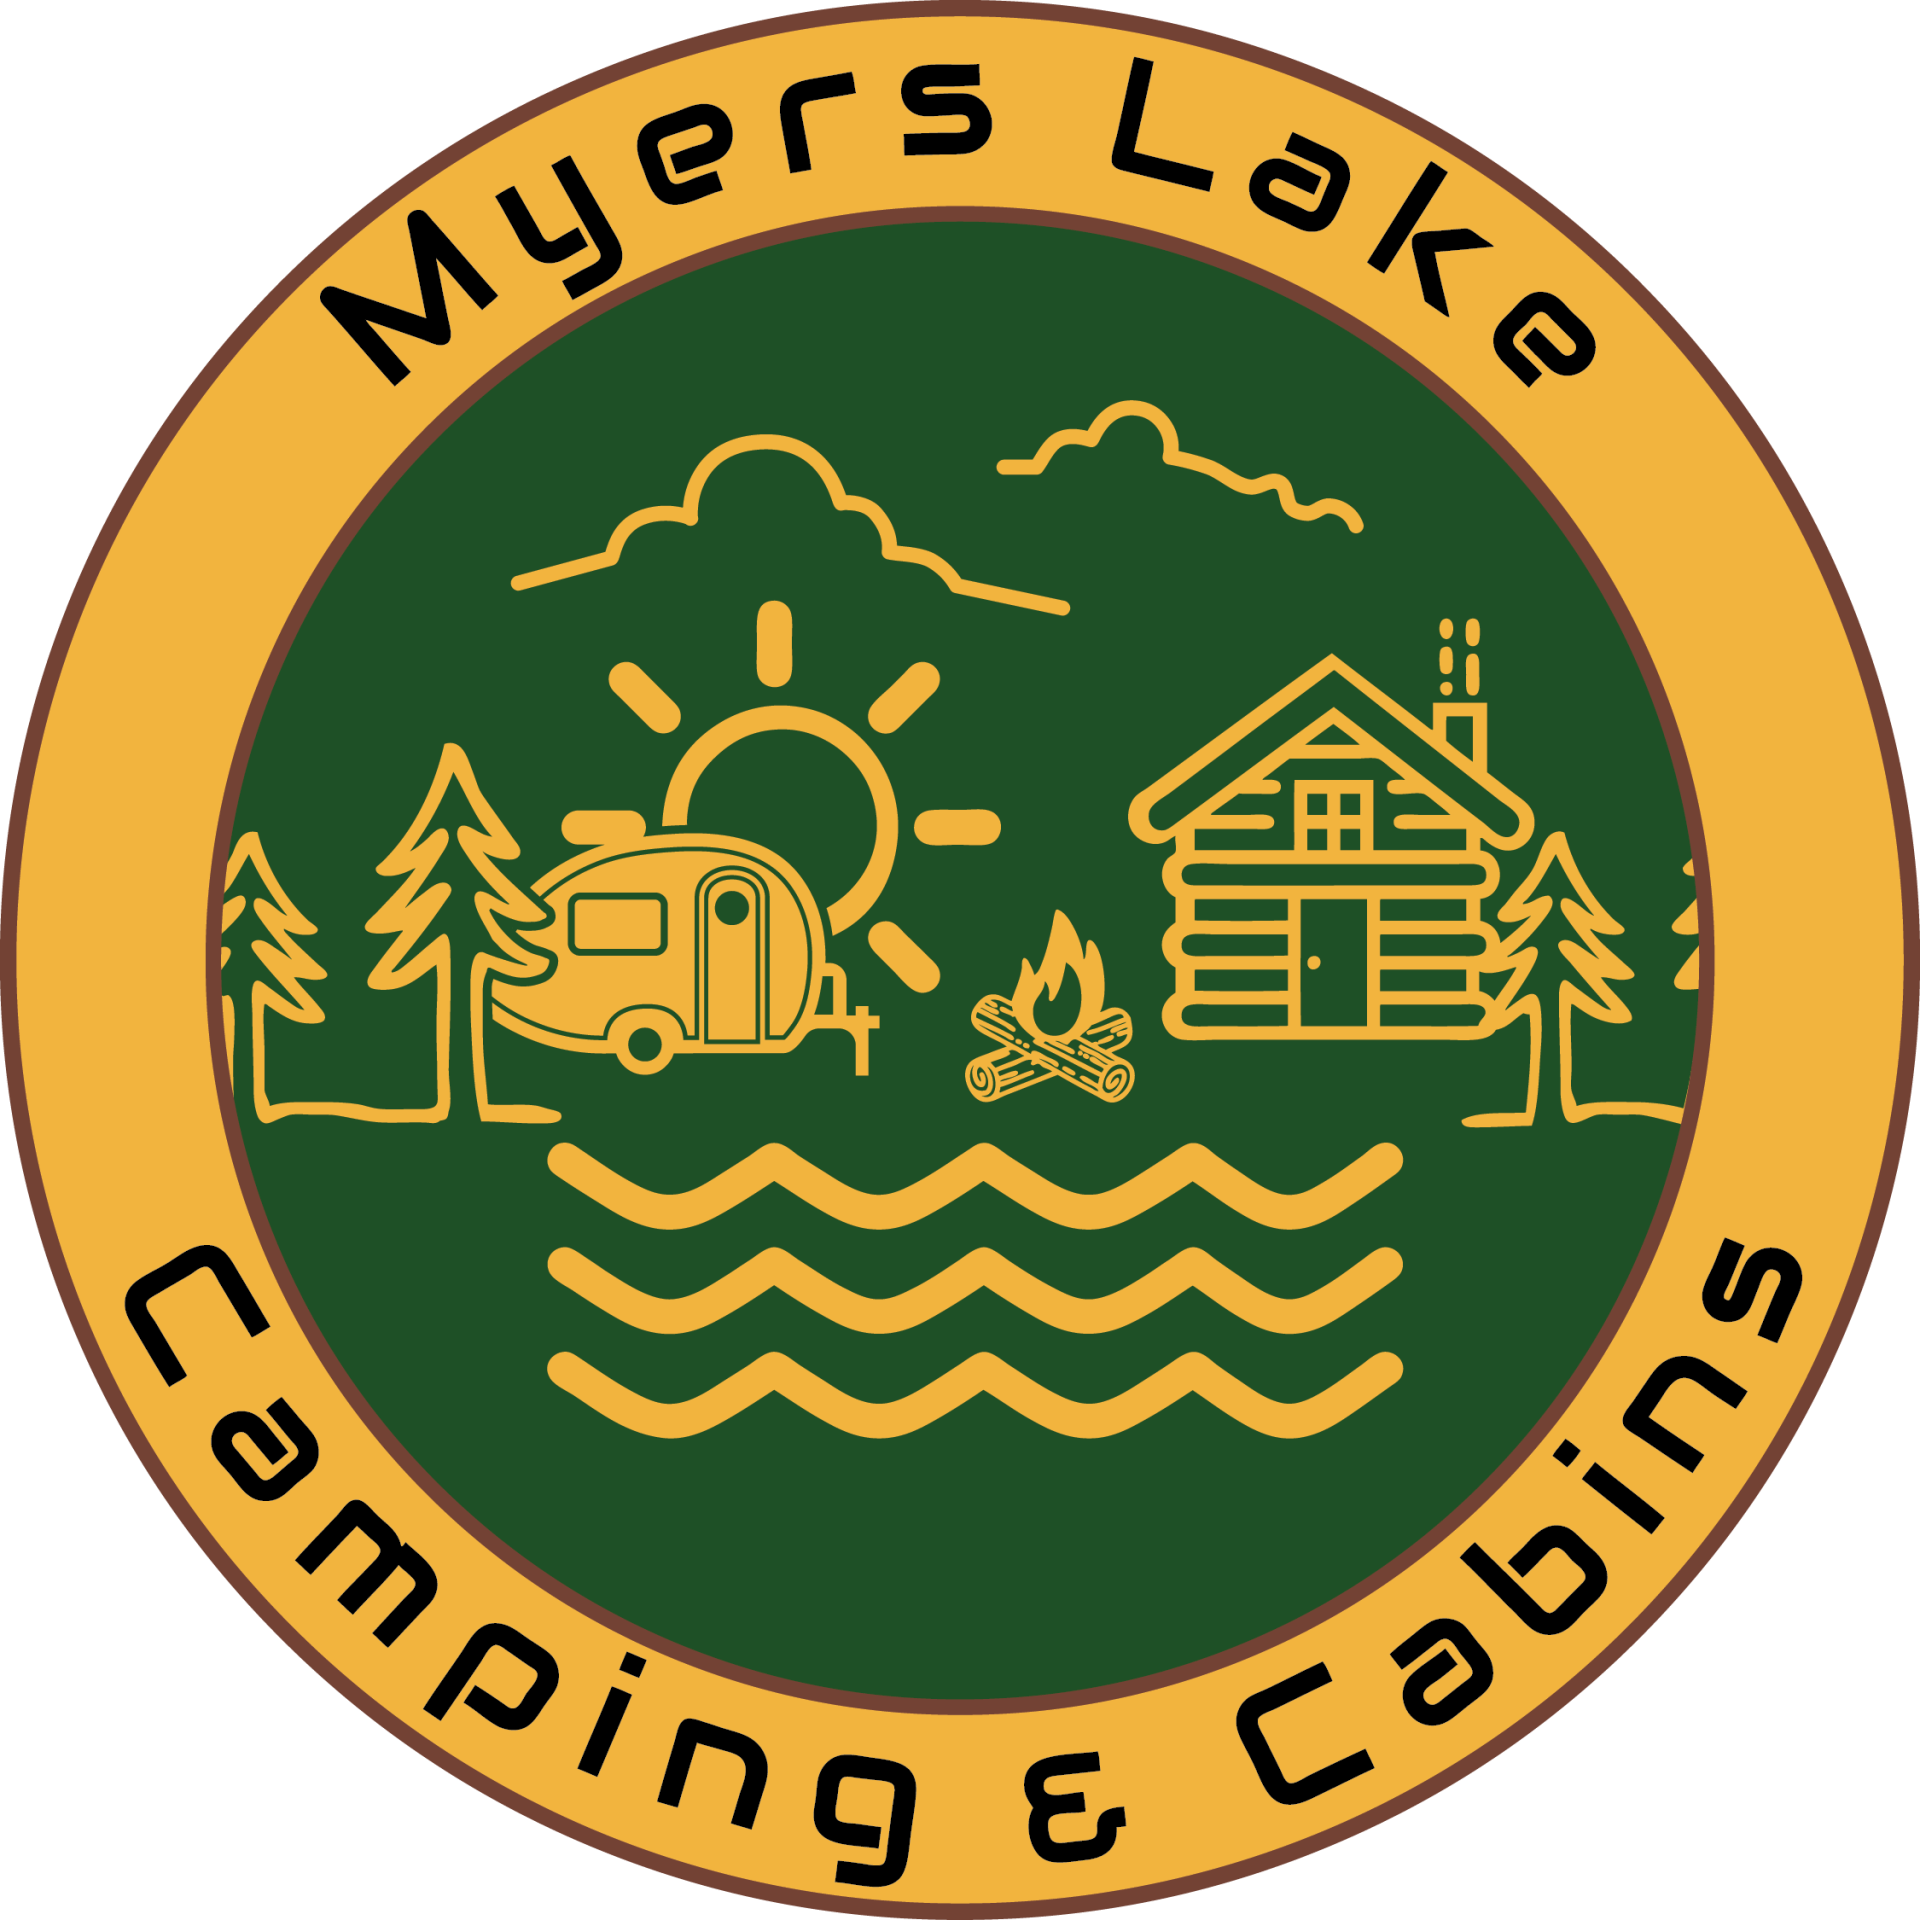 Myers Lake Camping & Cabins Logo